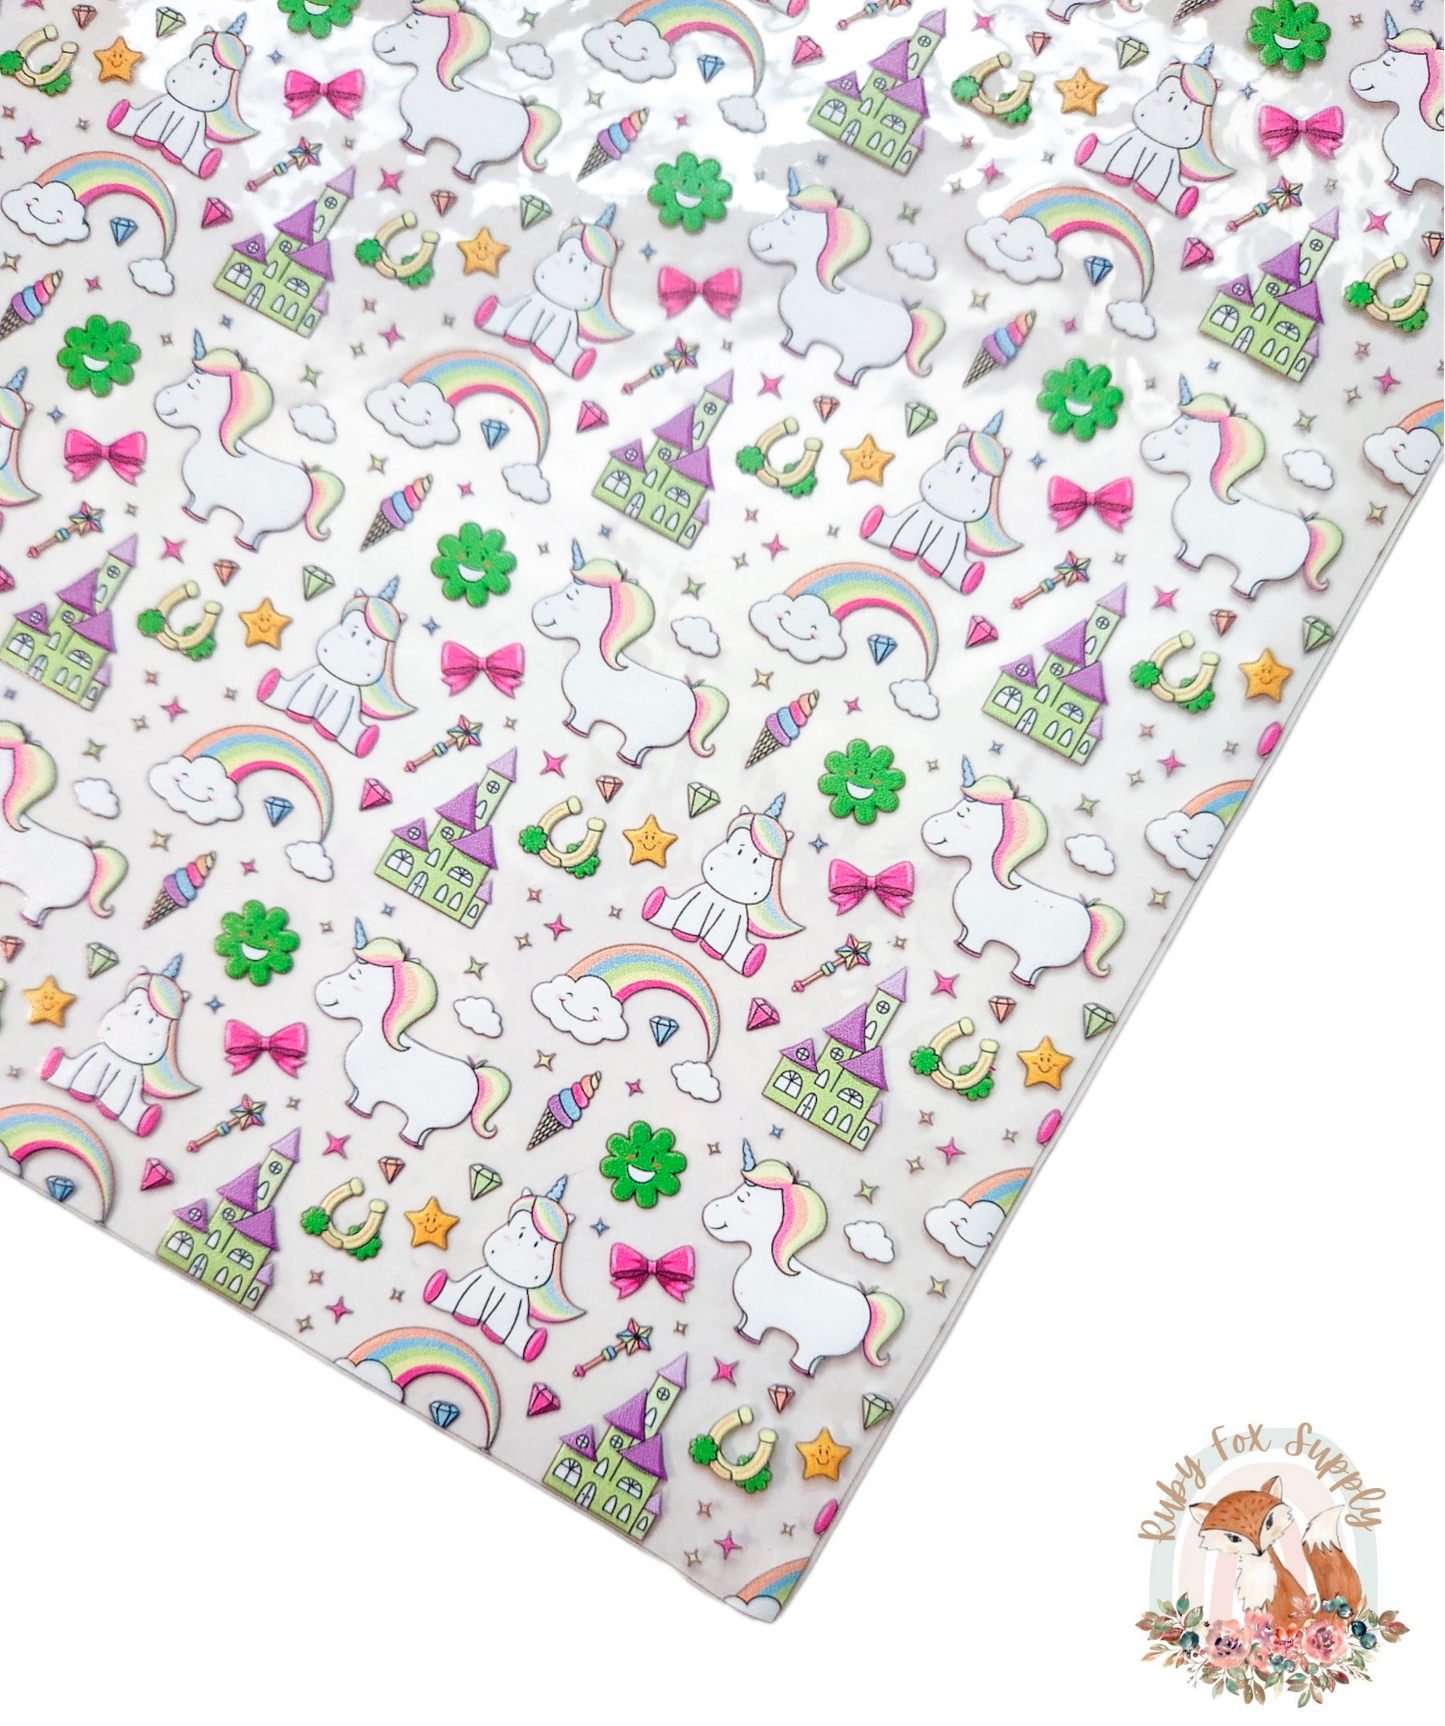 Unicorn Princess Printed Jelly sheet